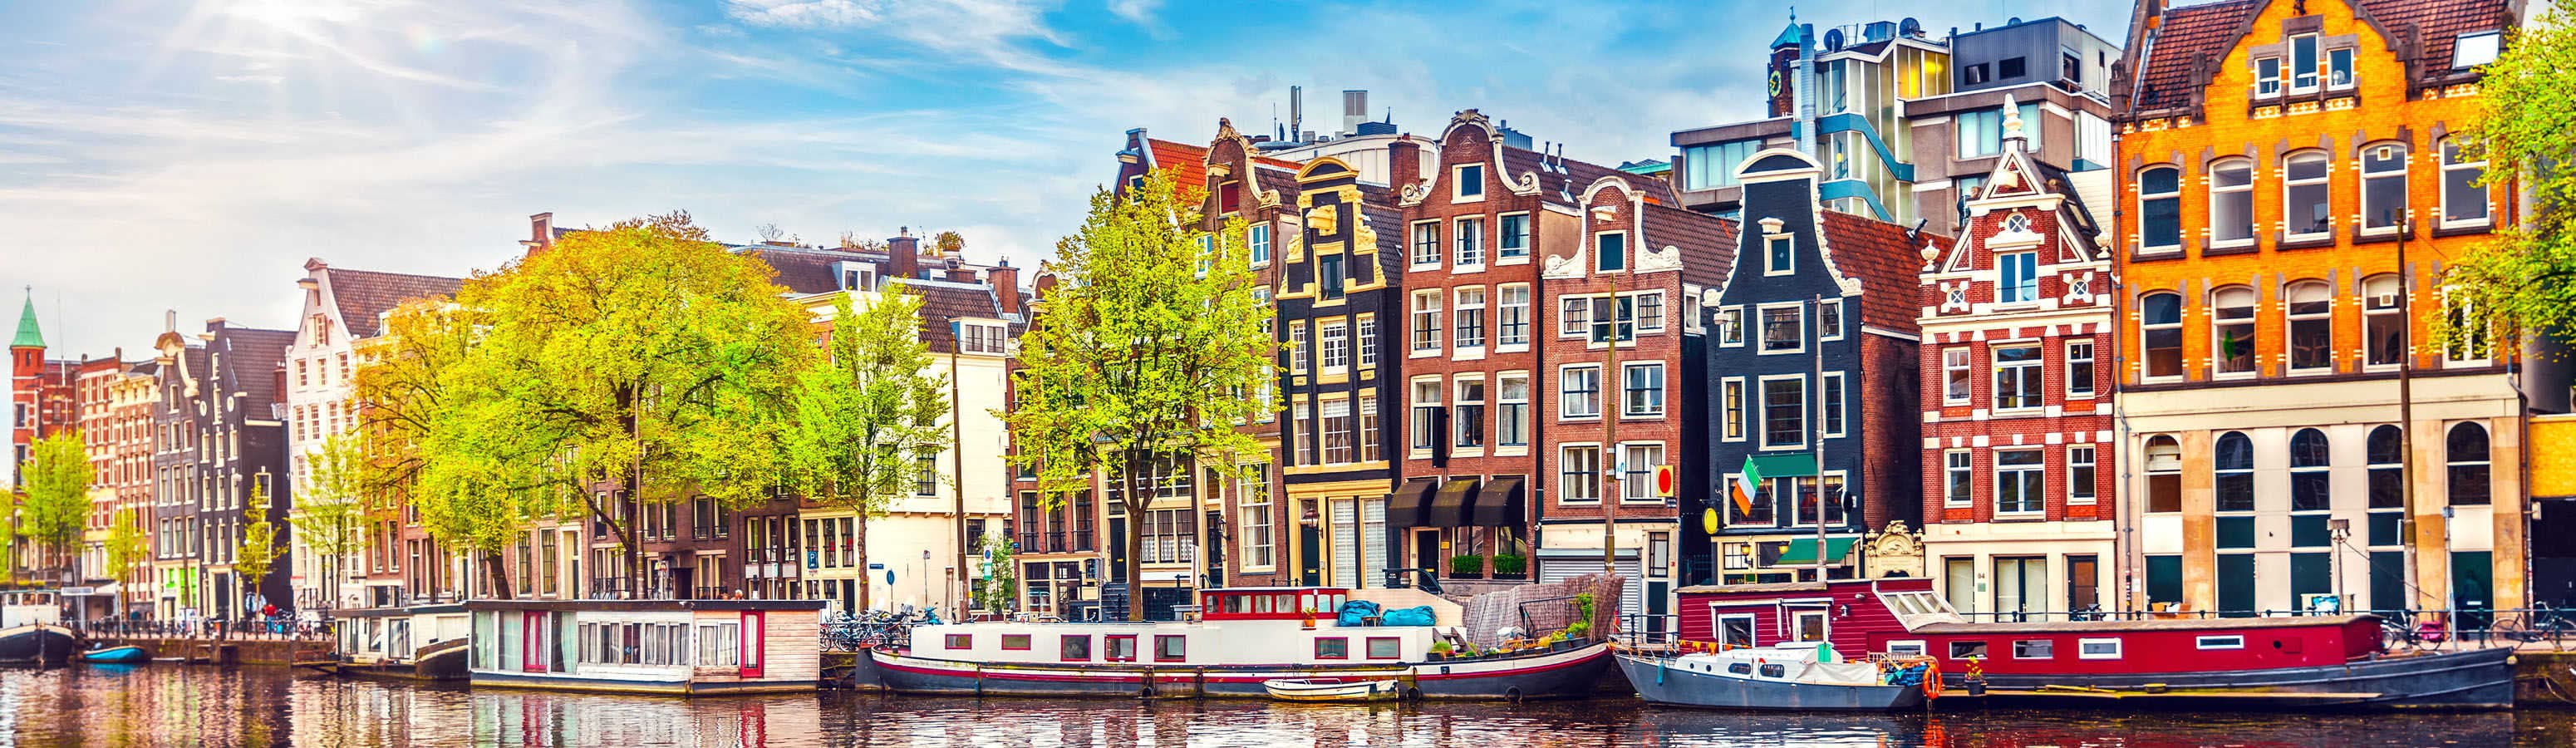 Romantica Amsterdam, città di ciclisti, cofeeshop e tulipani